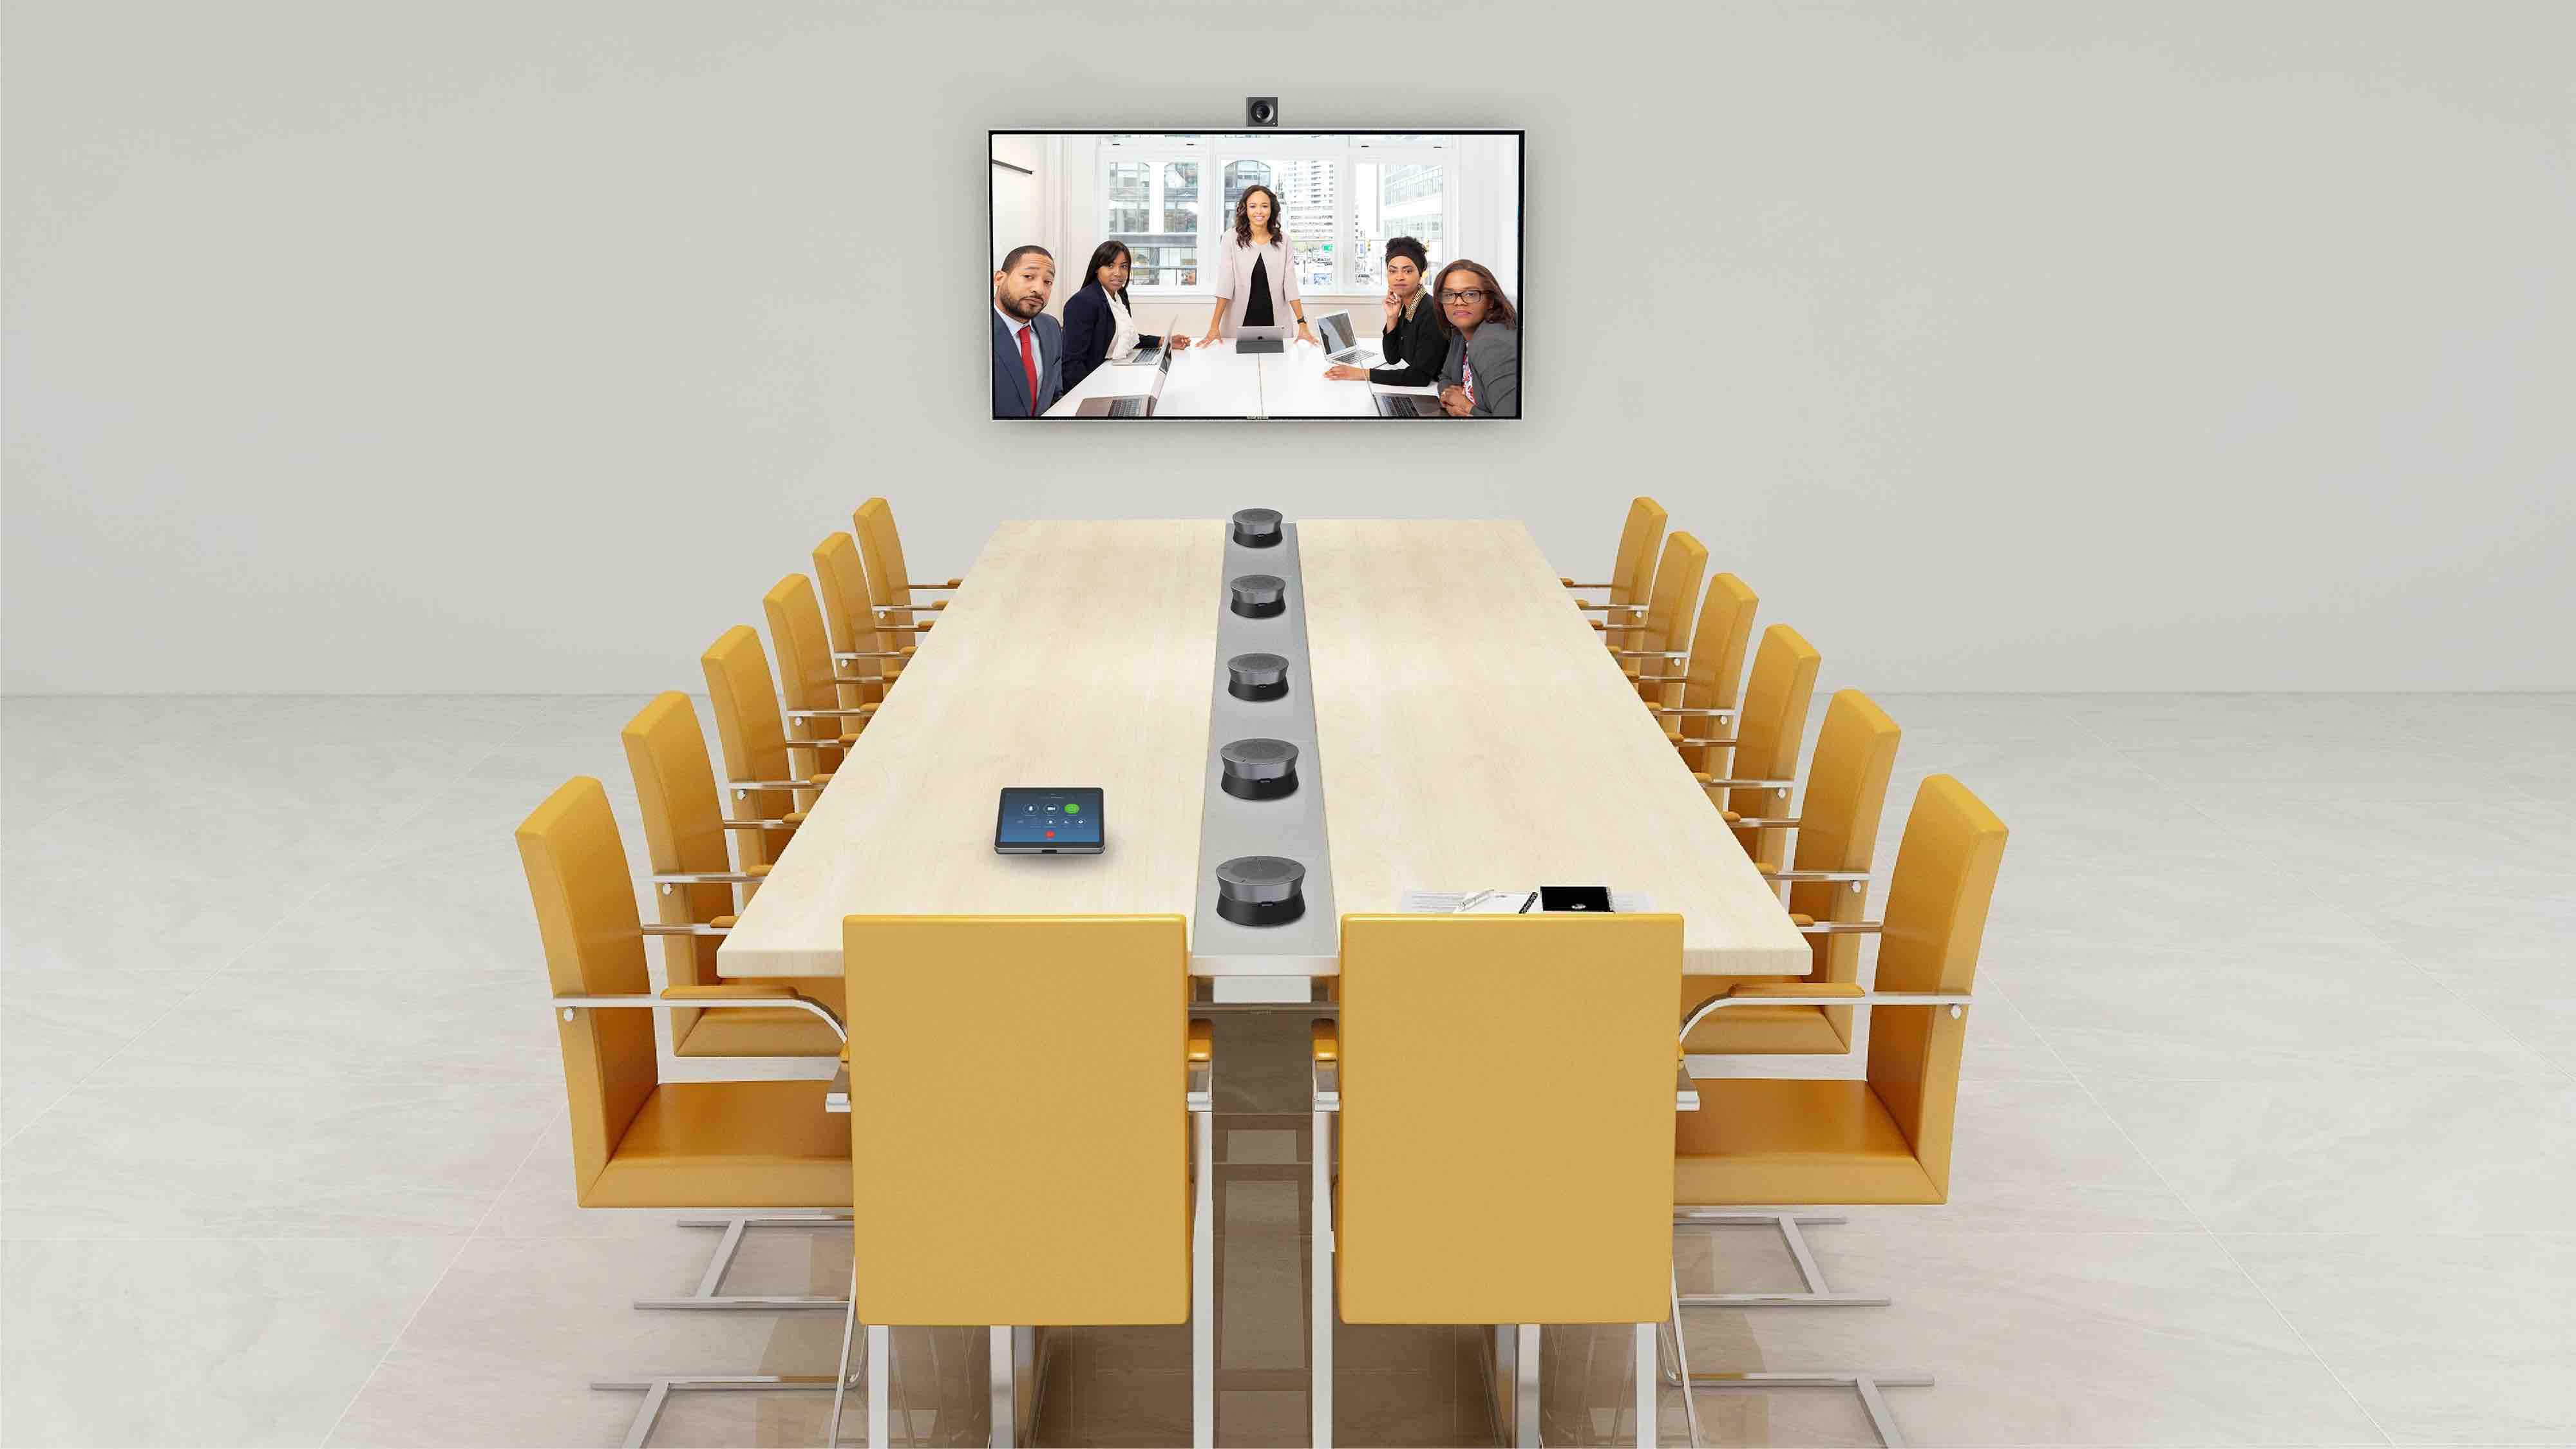 Hamedal耳目达大型视频会议室单显示终端解决方案